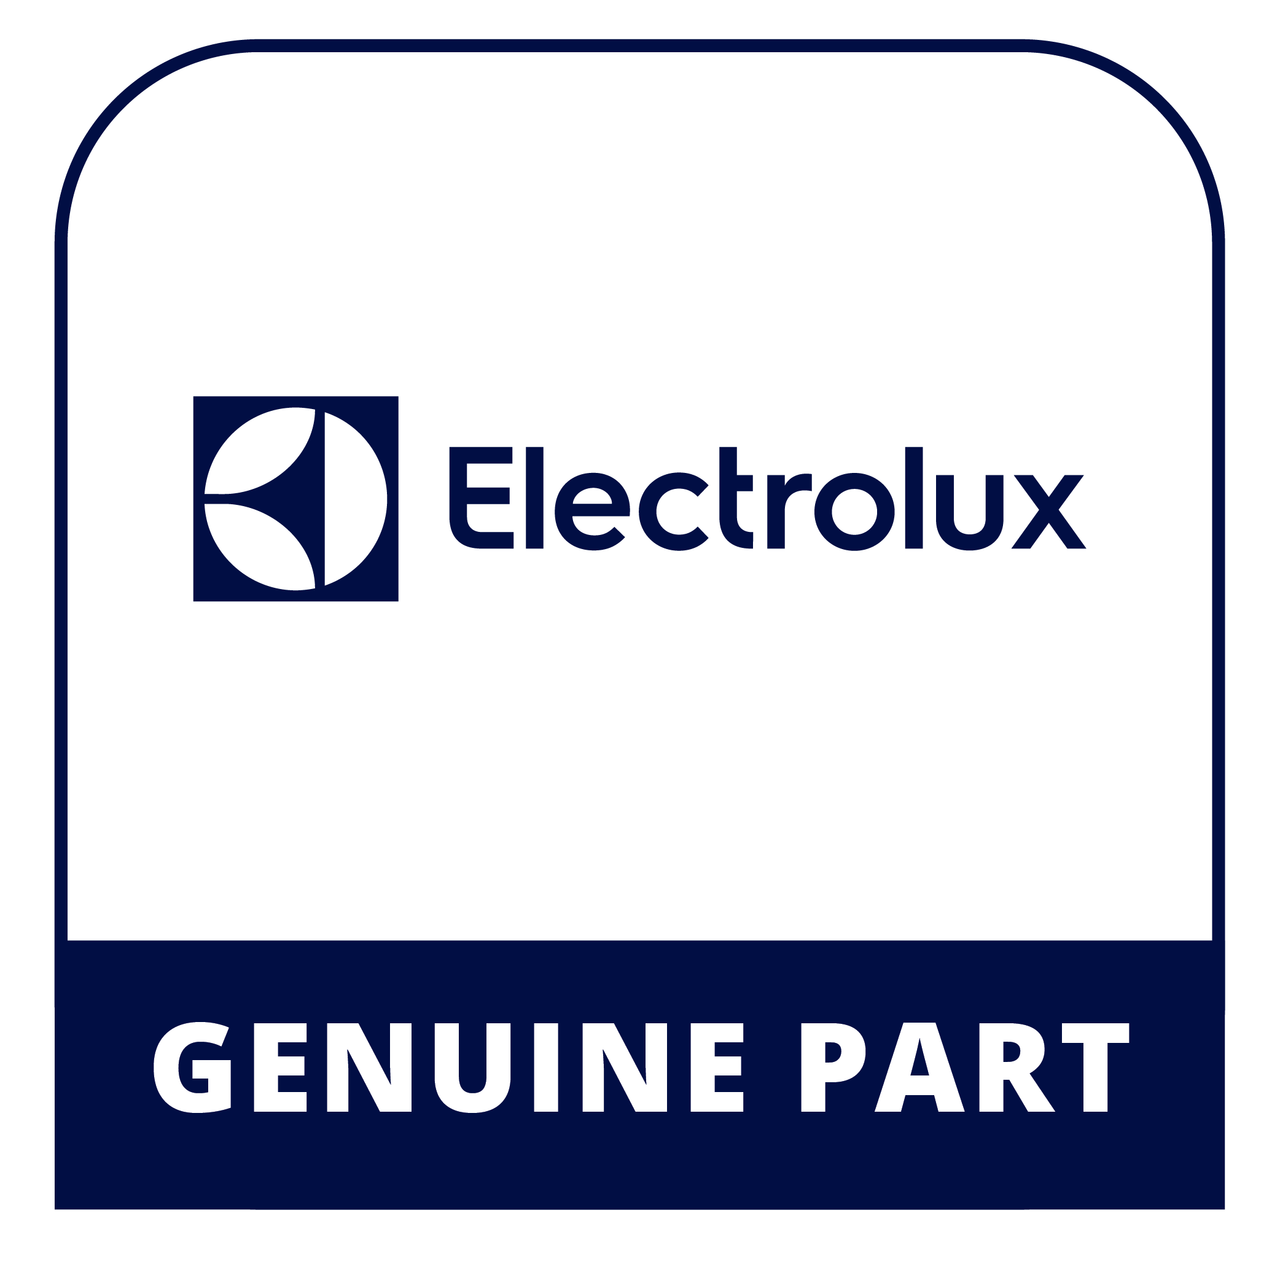 Frigidaire - Electrolux 137205200 Switch - Genuine Electrolux Part